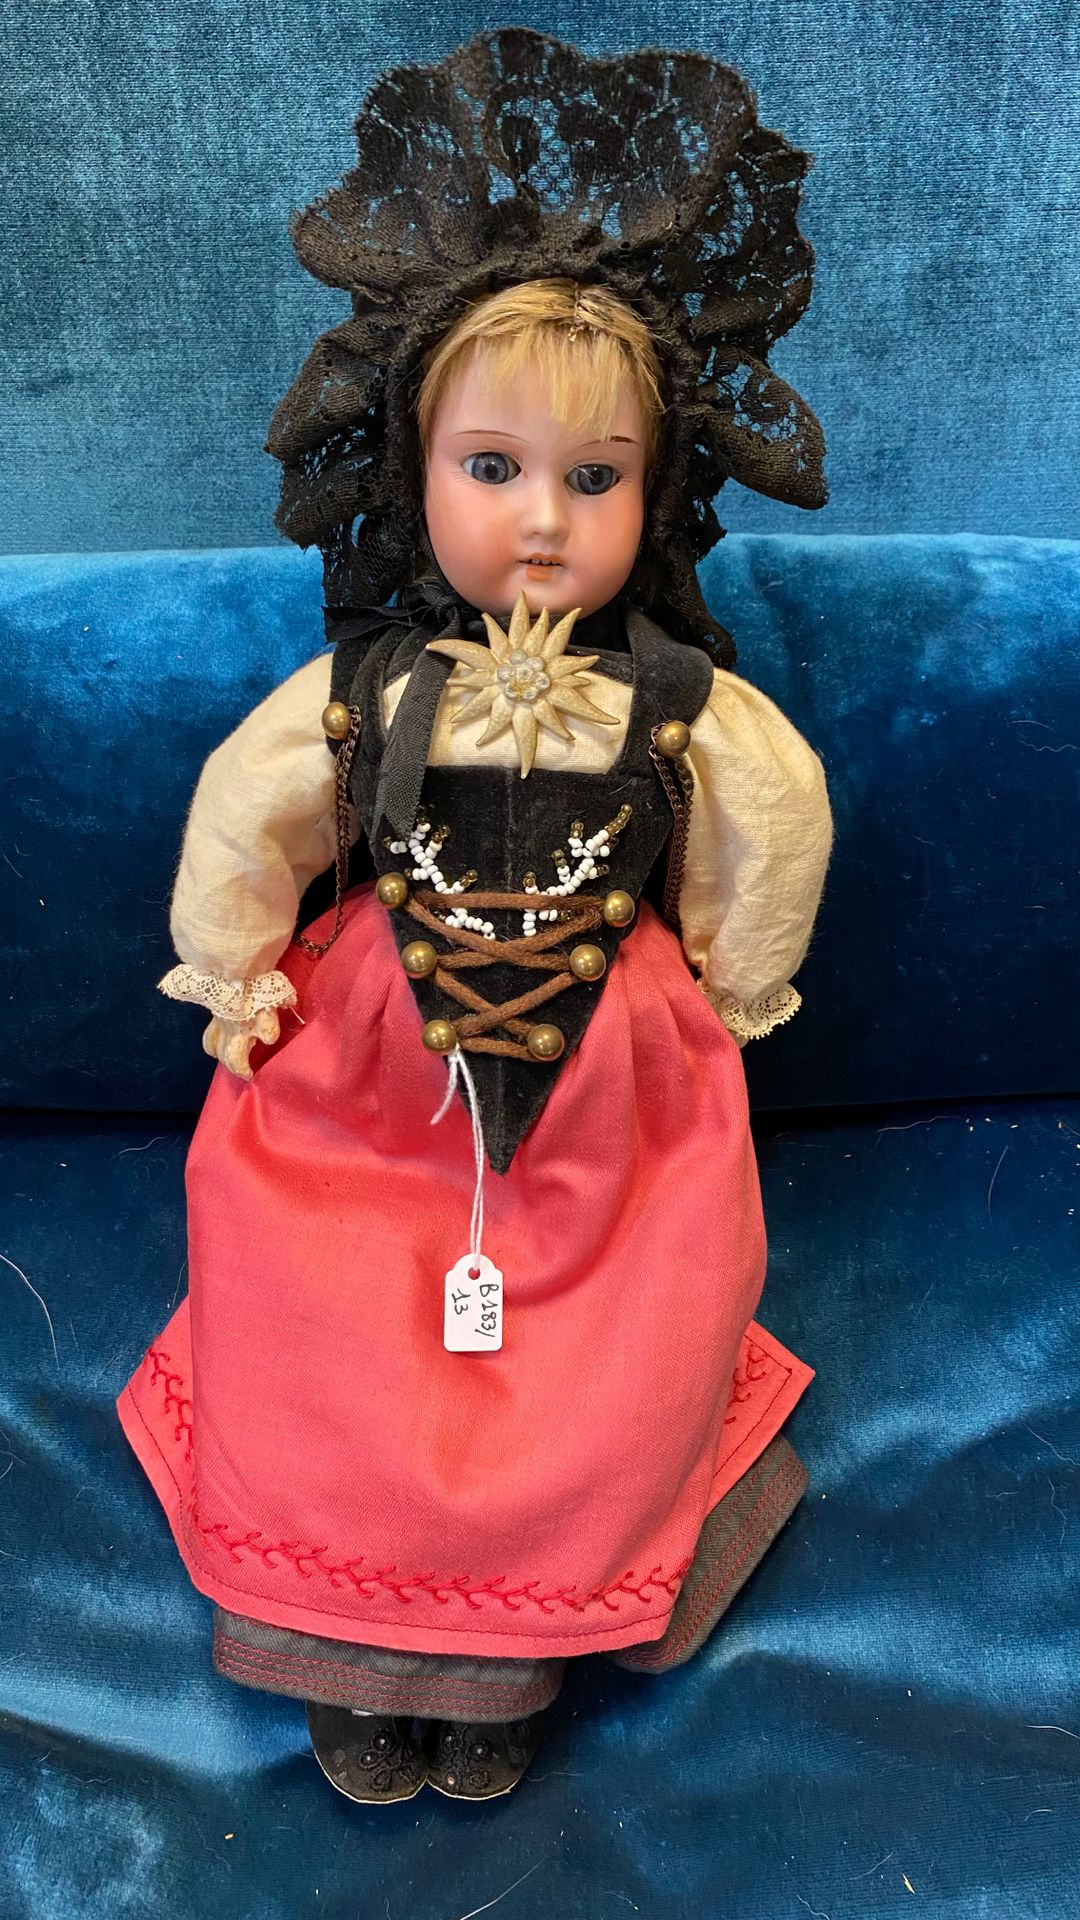 Null 德国地区的娃娃，有饼干头，张着嘴，身体是复合材料。民俗服装。

H.35厘米

(磨损)